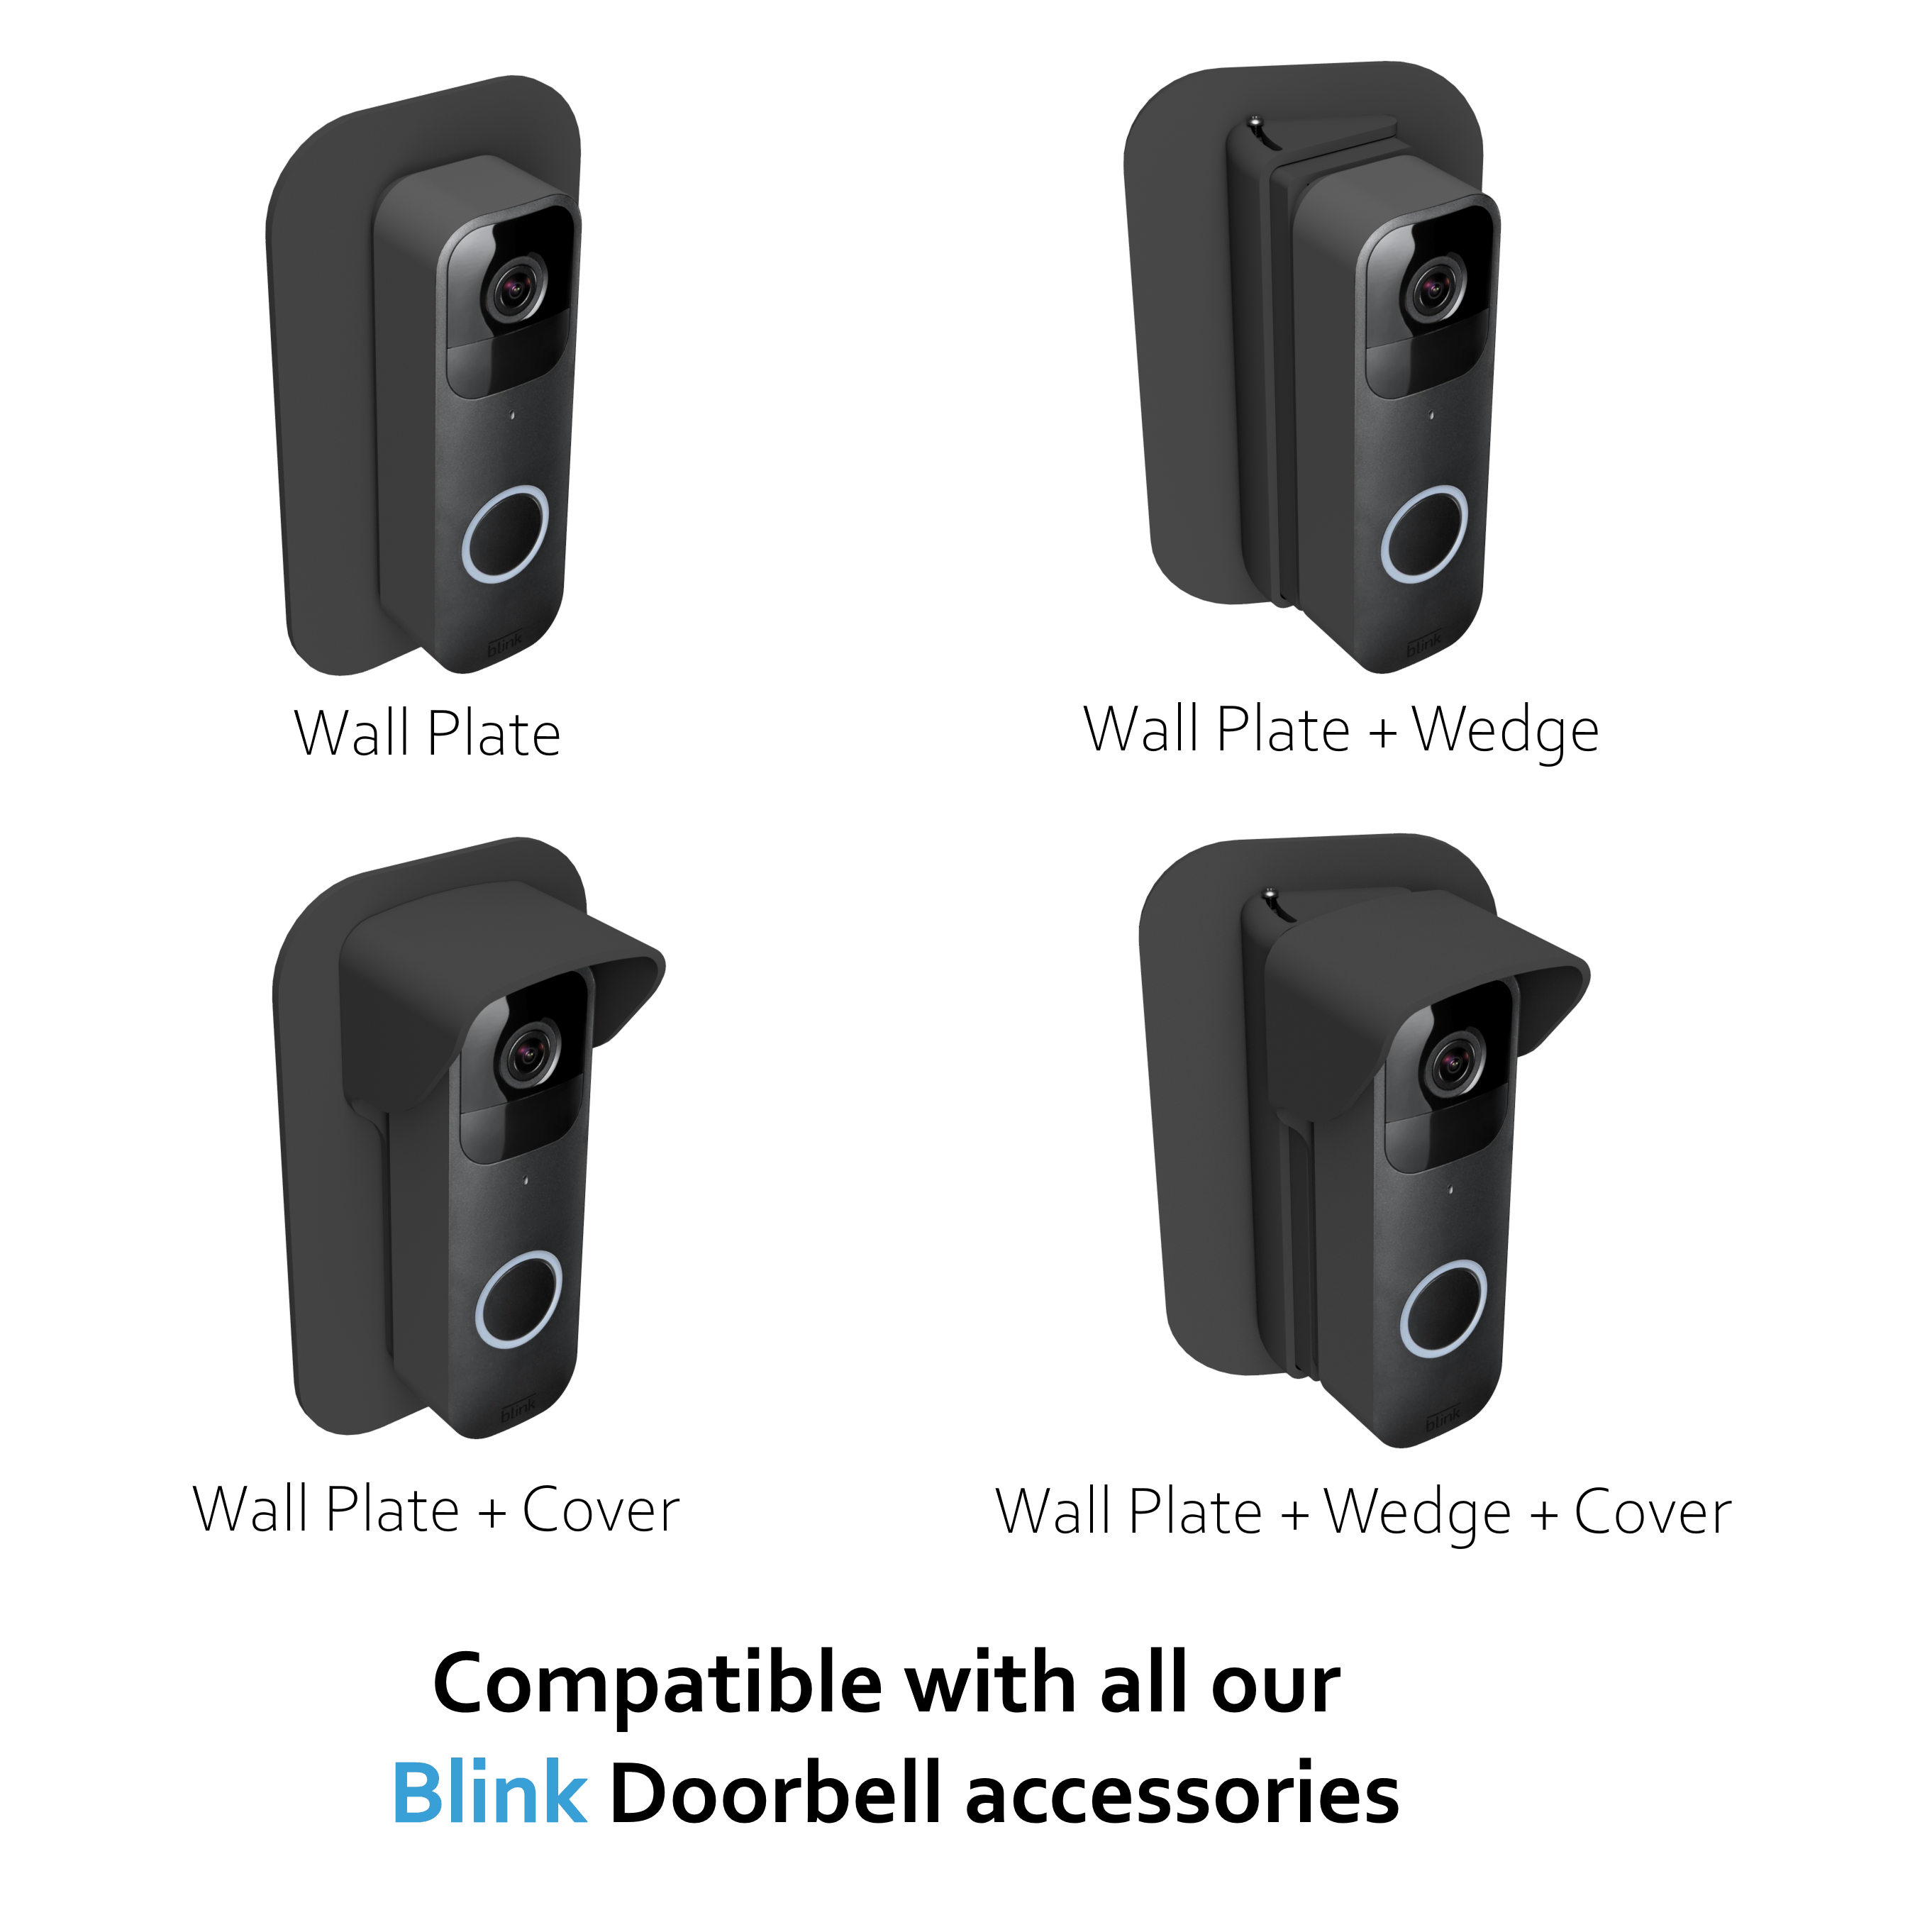 Blink doorbell accessories